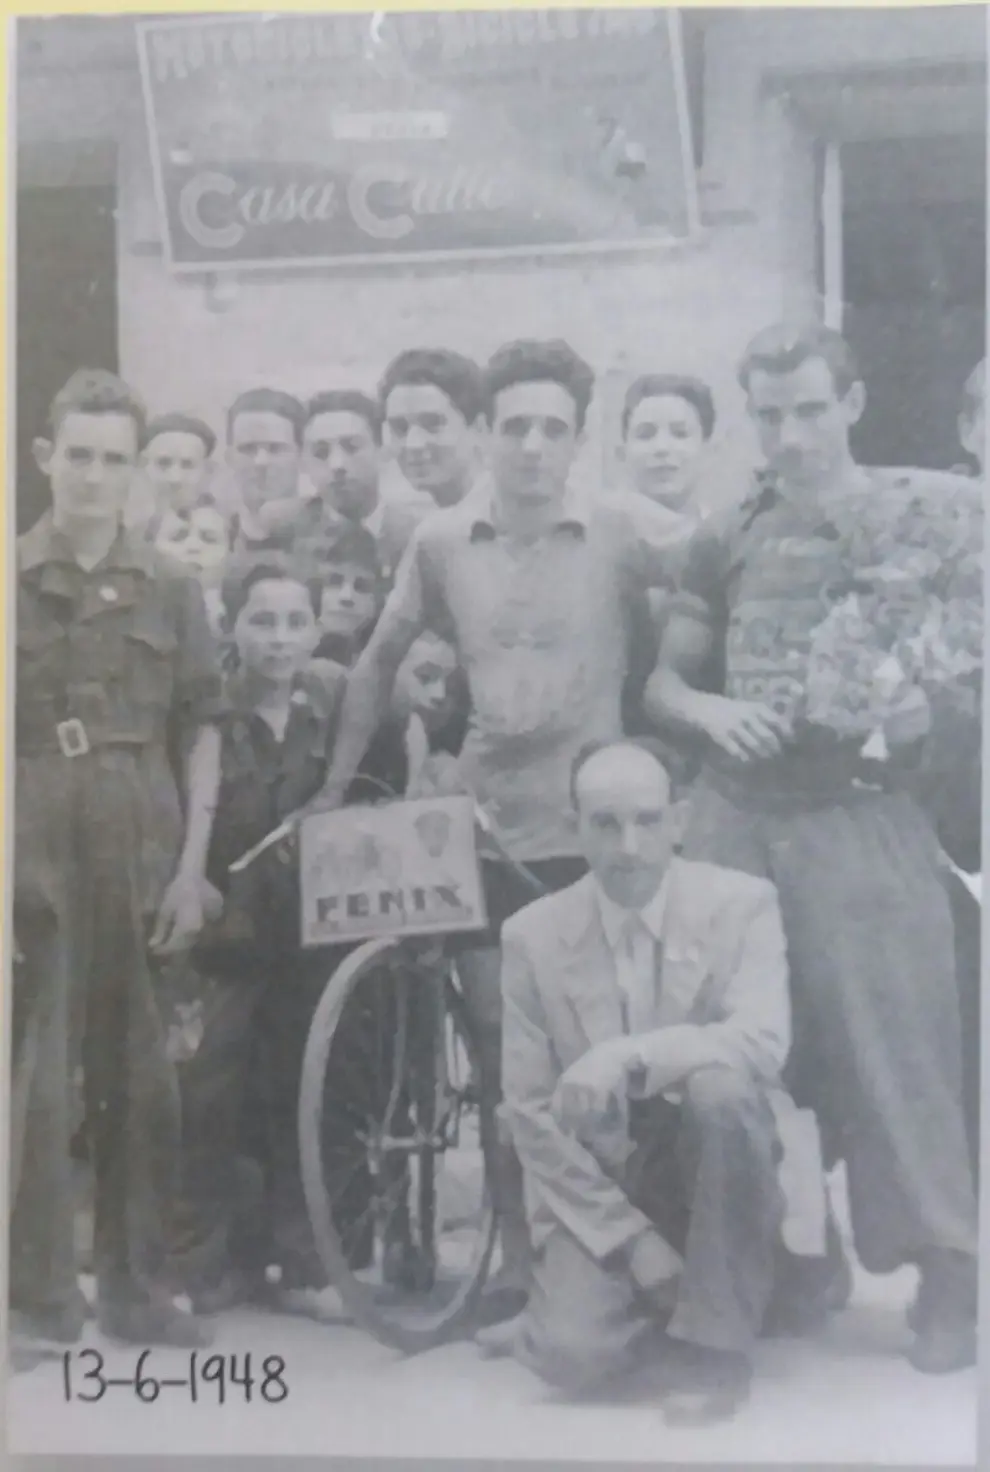 130 años de historia del Gran Premio San Lorenzo de ciclismo